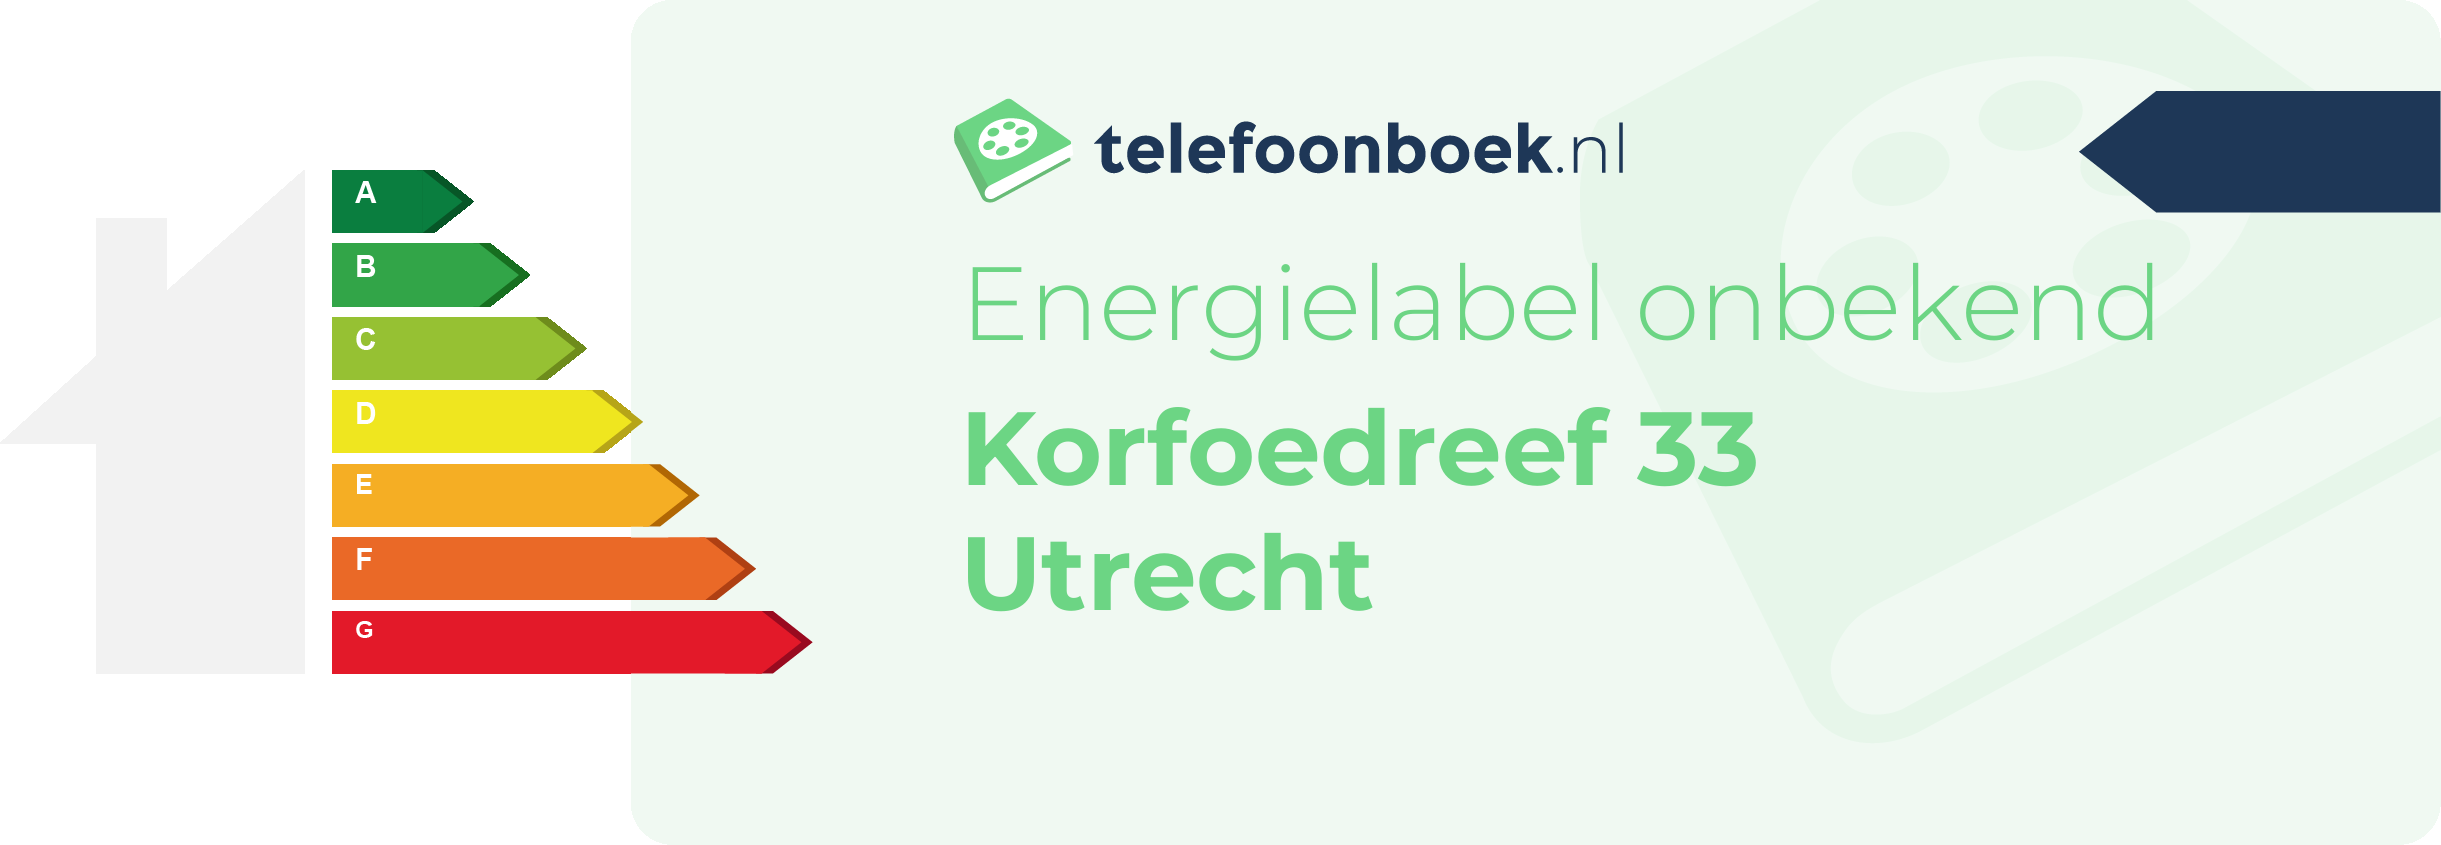 Energielabel Korfoedreef 33 Utrecht